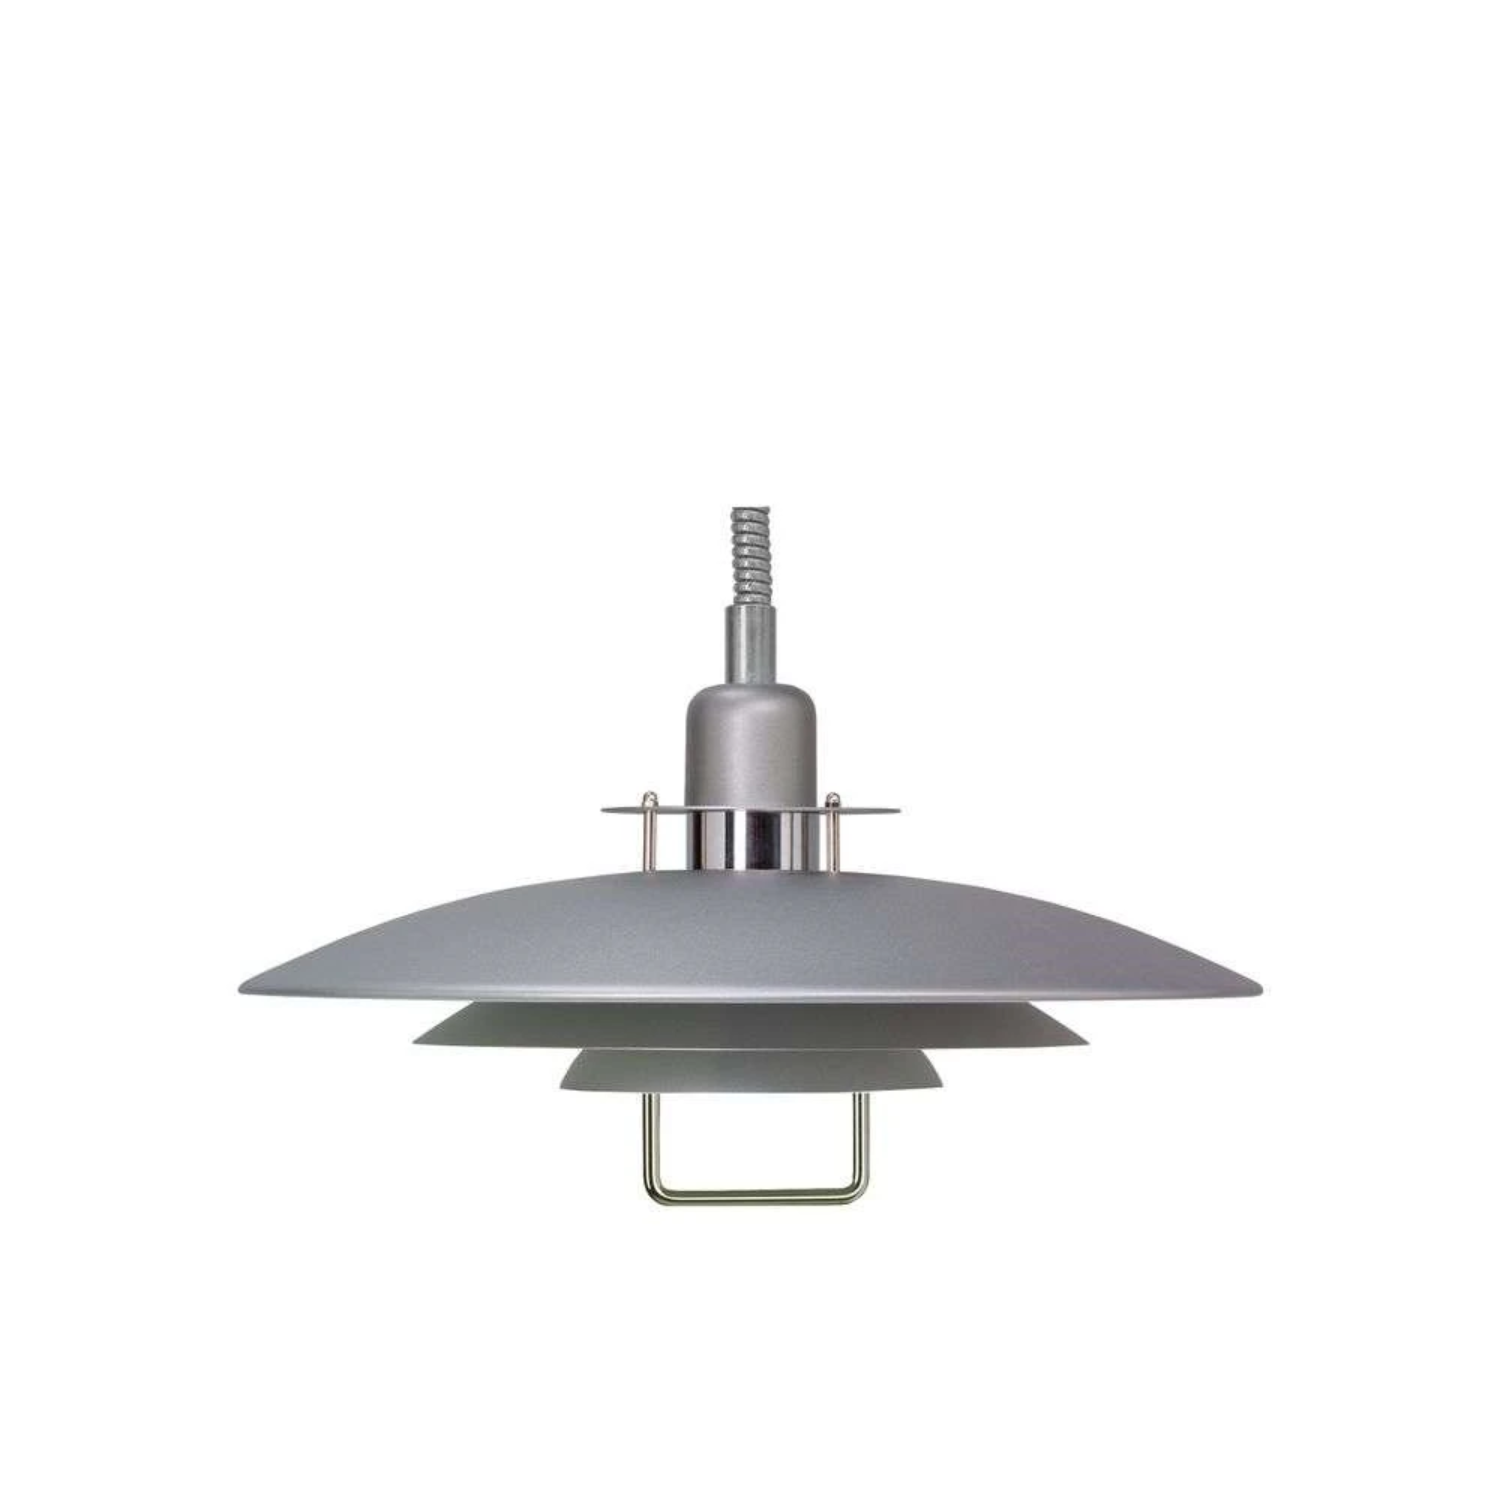 PRIMUS II (430 mm) -  Pendant Light